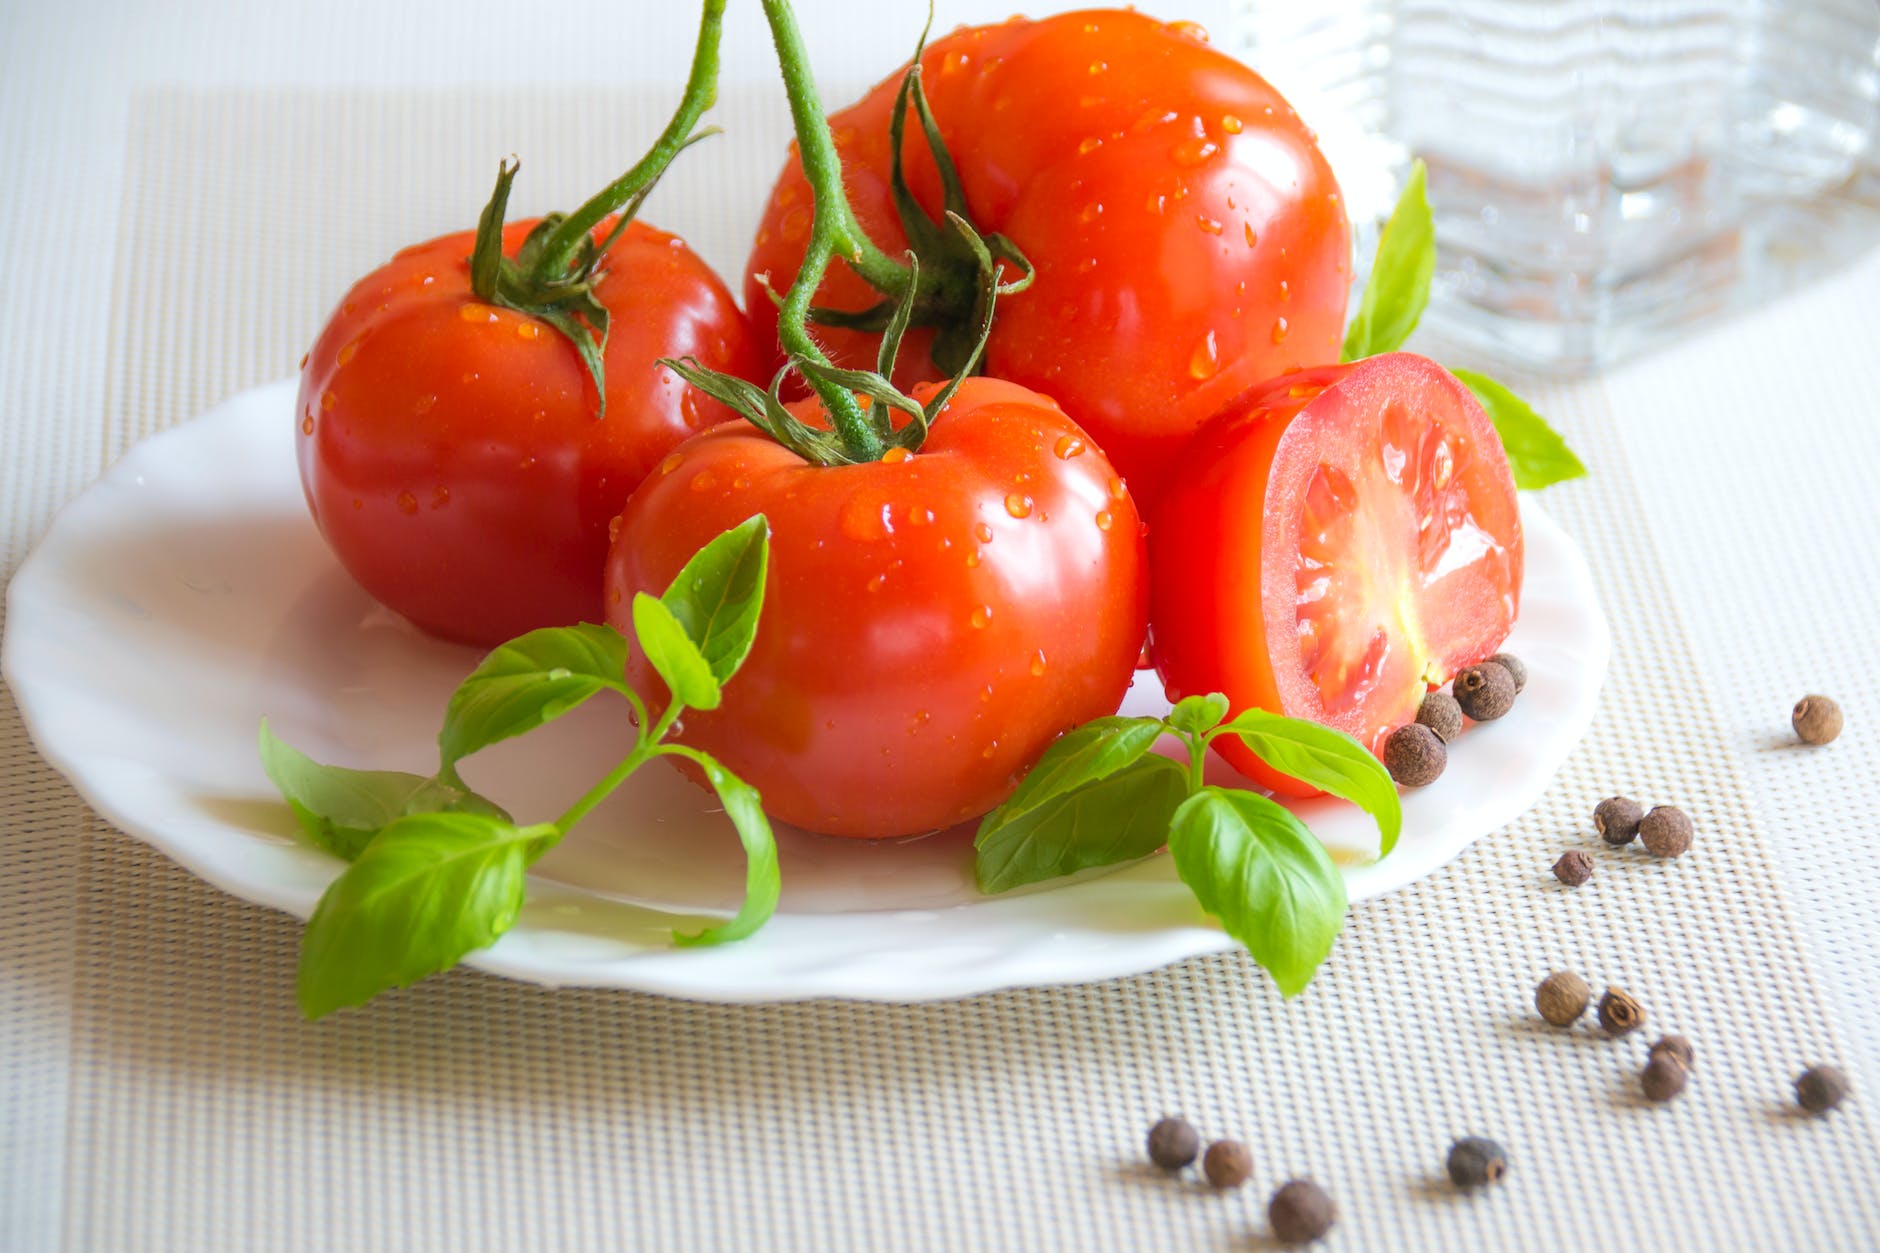 tomato 1 दिन में कितने टमाटर खाने चाहिए